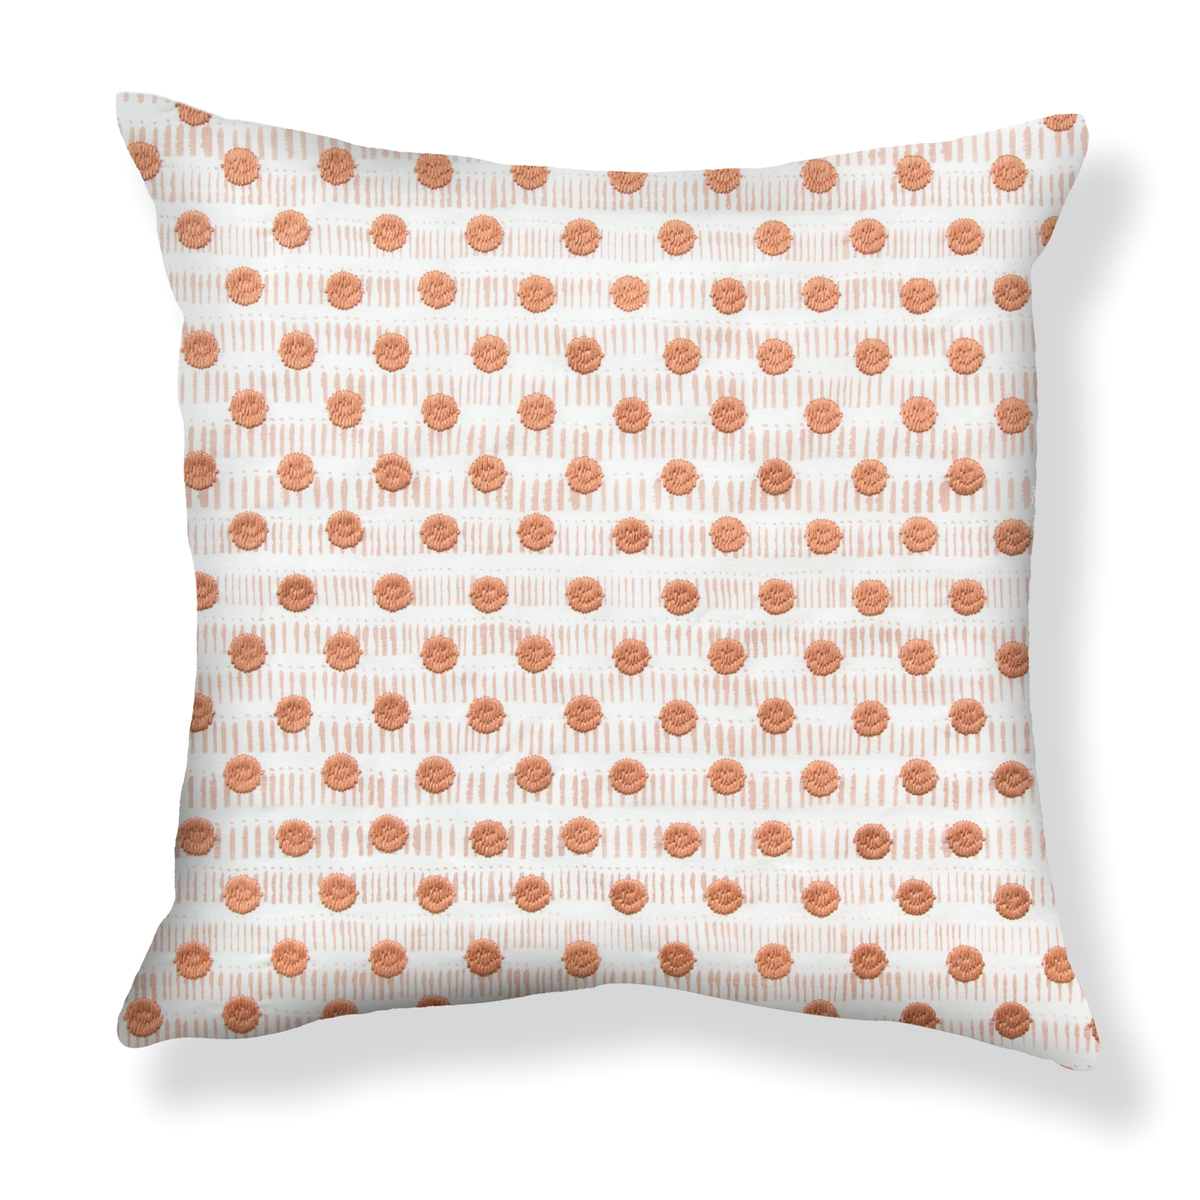 Dot Dash in Blush / Tangerine Pillow